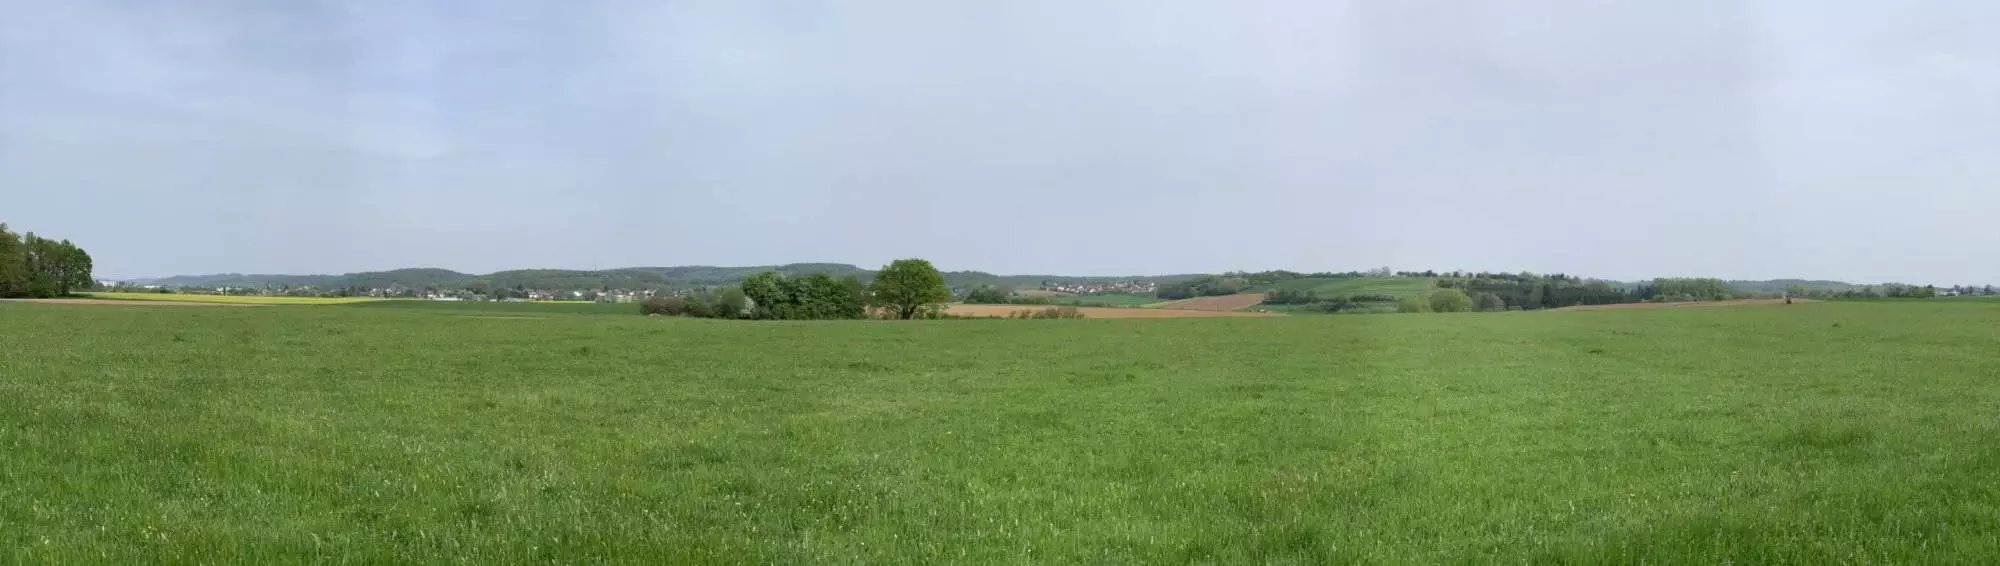 Ein Panoramablick auf eine grüne Wiese mit Bäumen im Hintergrund.